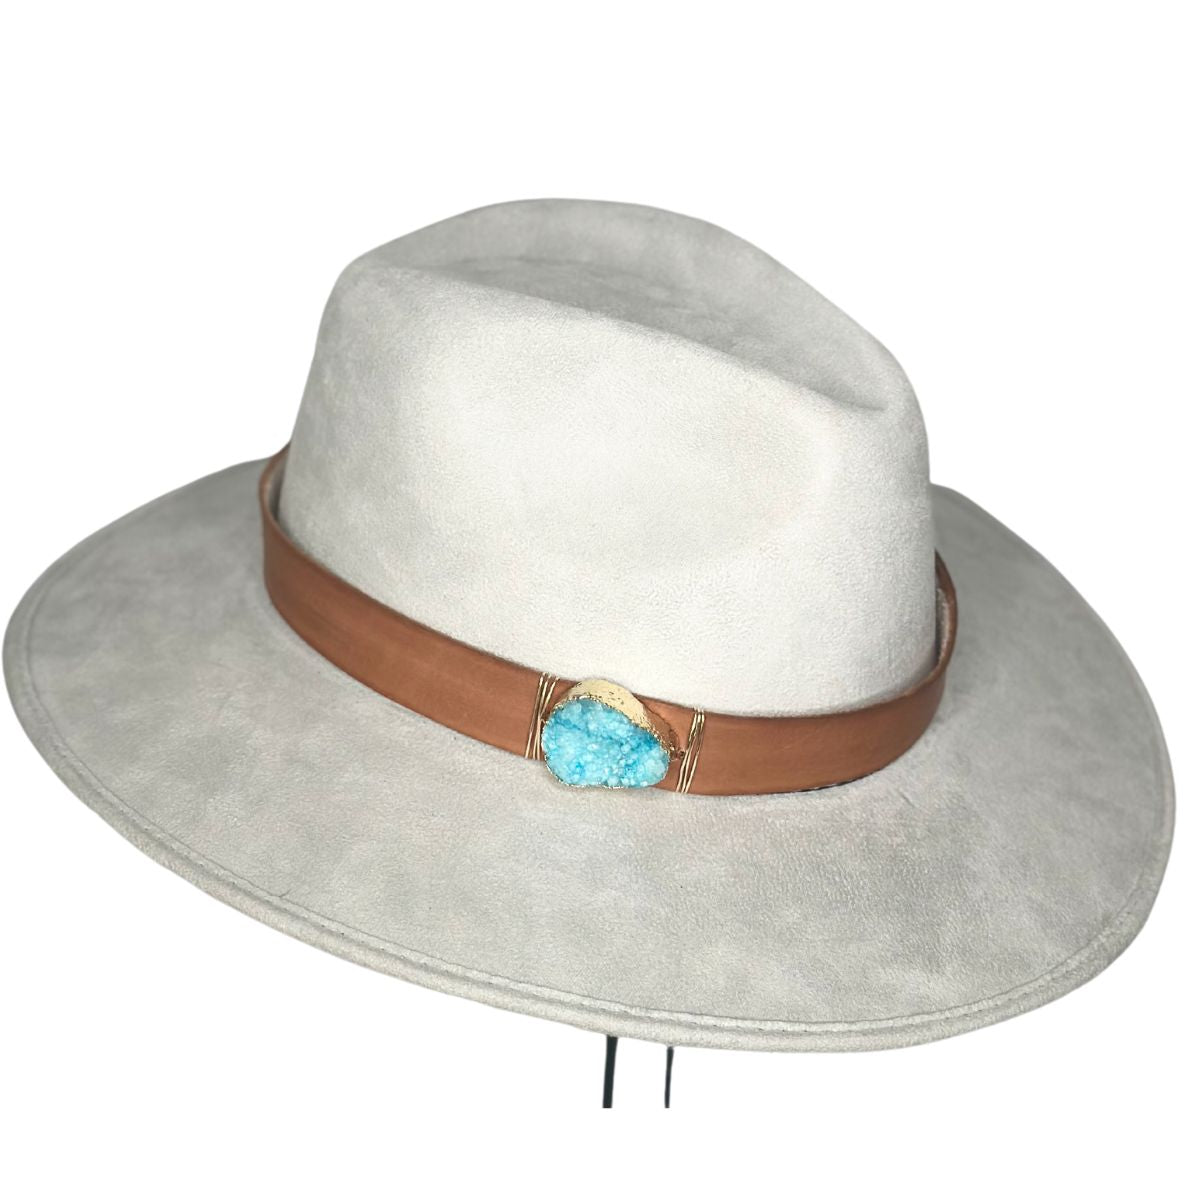 BL Flower Rhinestone Chain Strap Cowboy Hat - Accessories